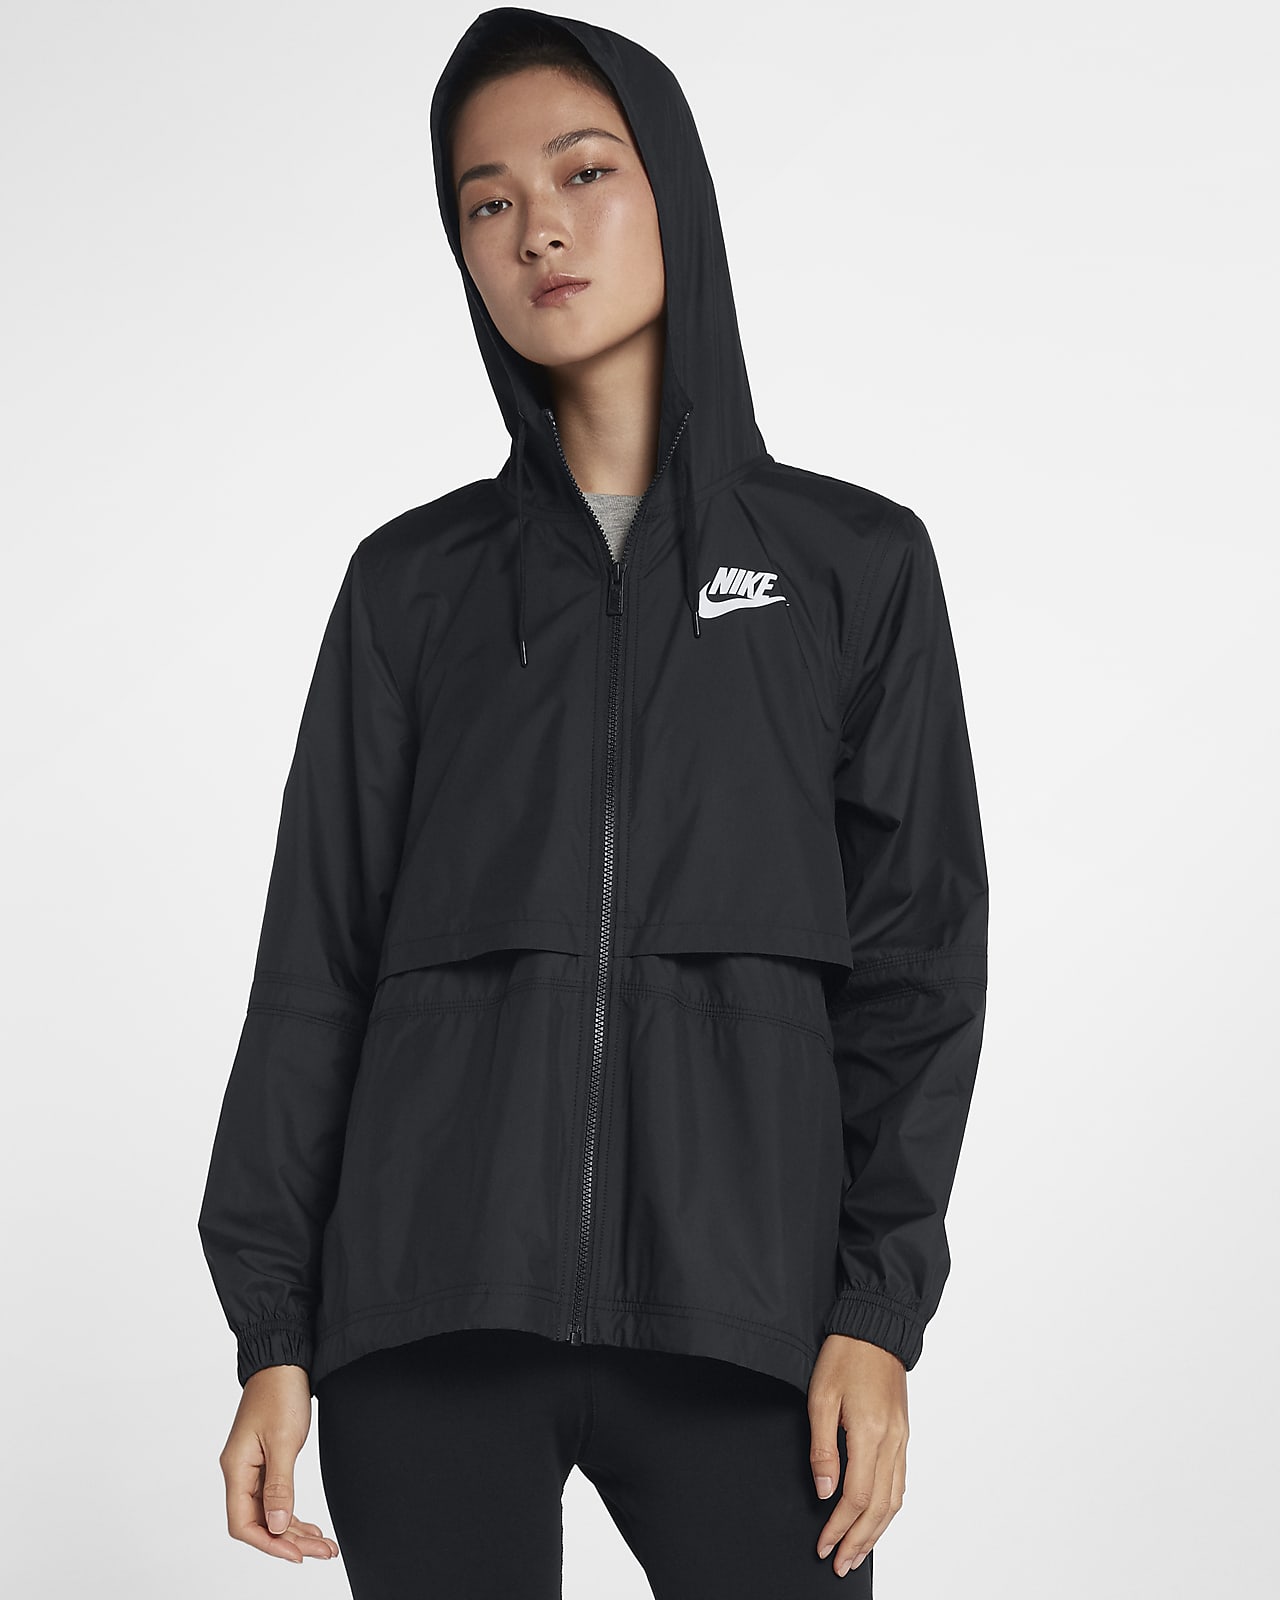 Nike Sportswear Repel Women's Woven Jacket